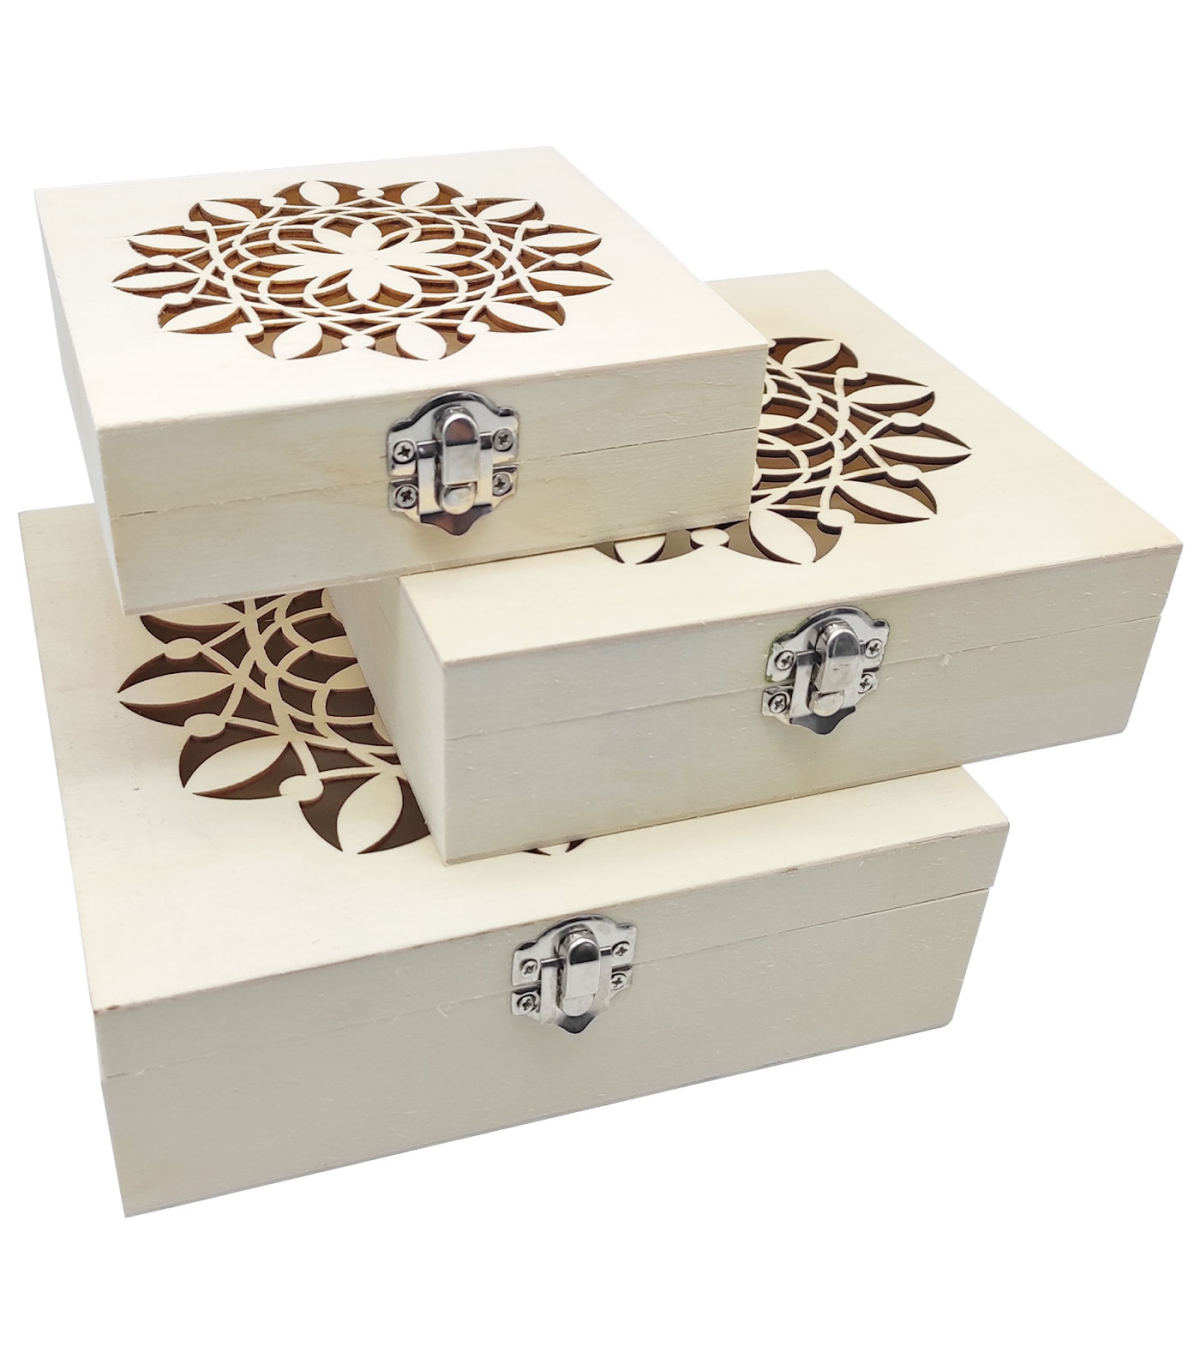 Tradineur - Set de 3 cajas de madera natural con tapa decorada